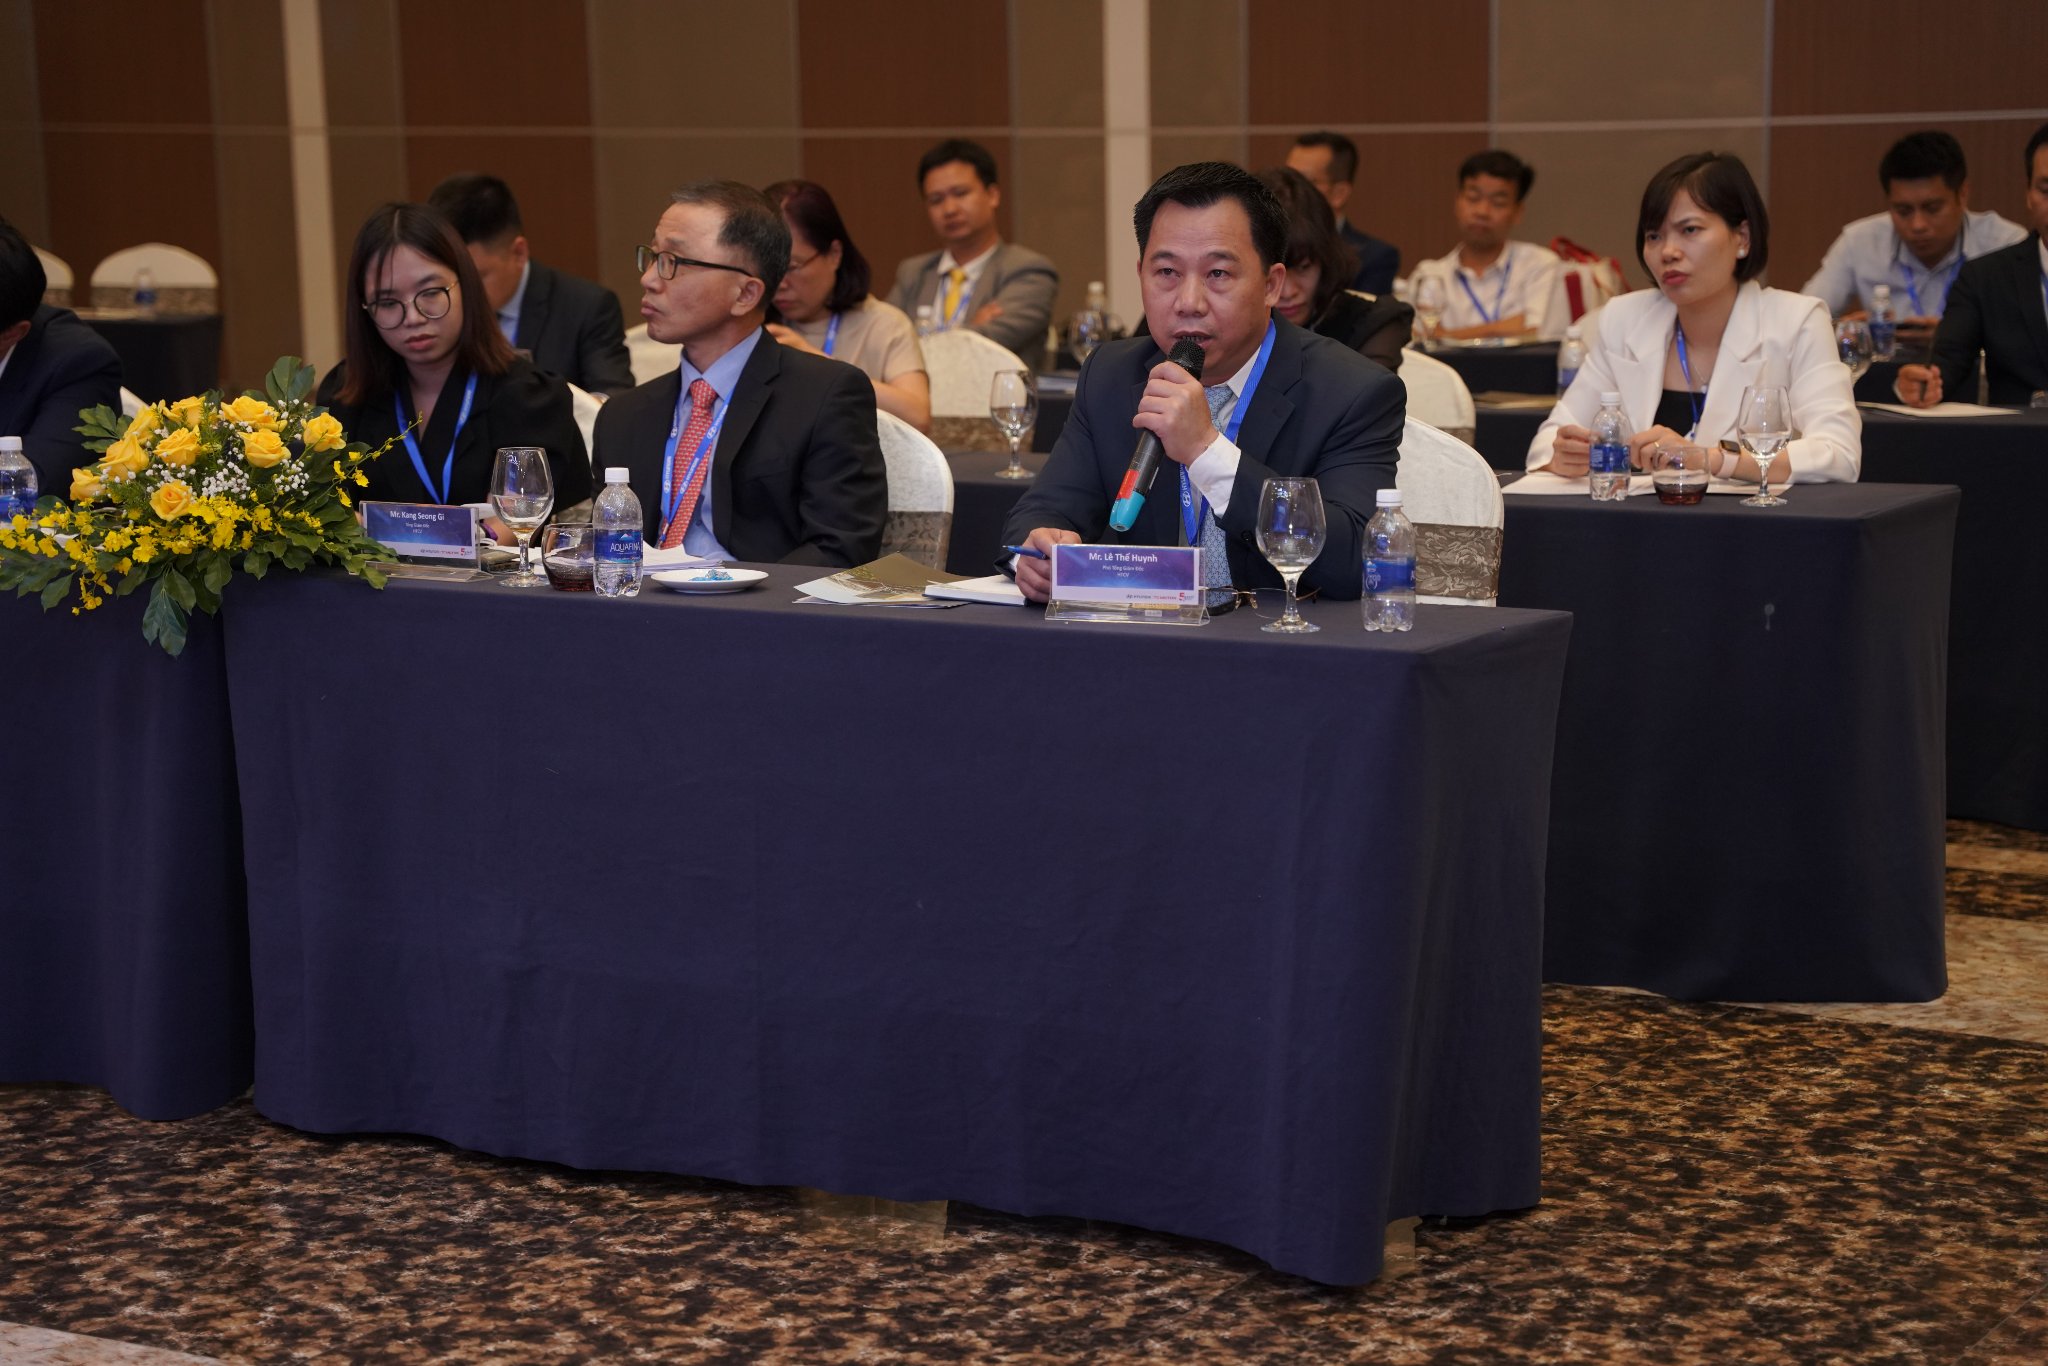 Hyundai Phố Hiến vinh dự tham dự Hội nghị đại lý 2022 